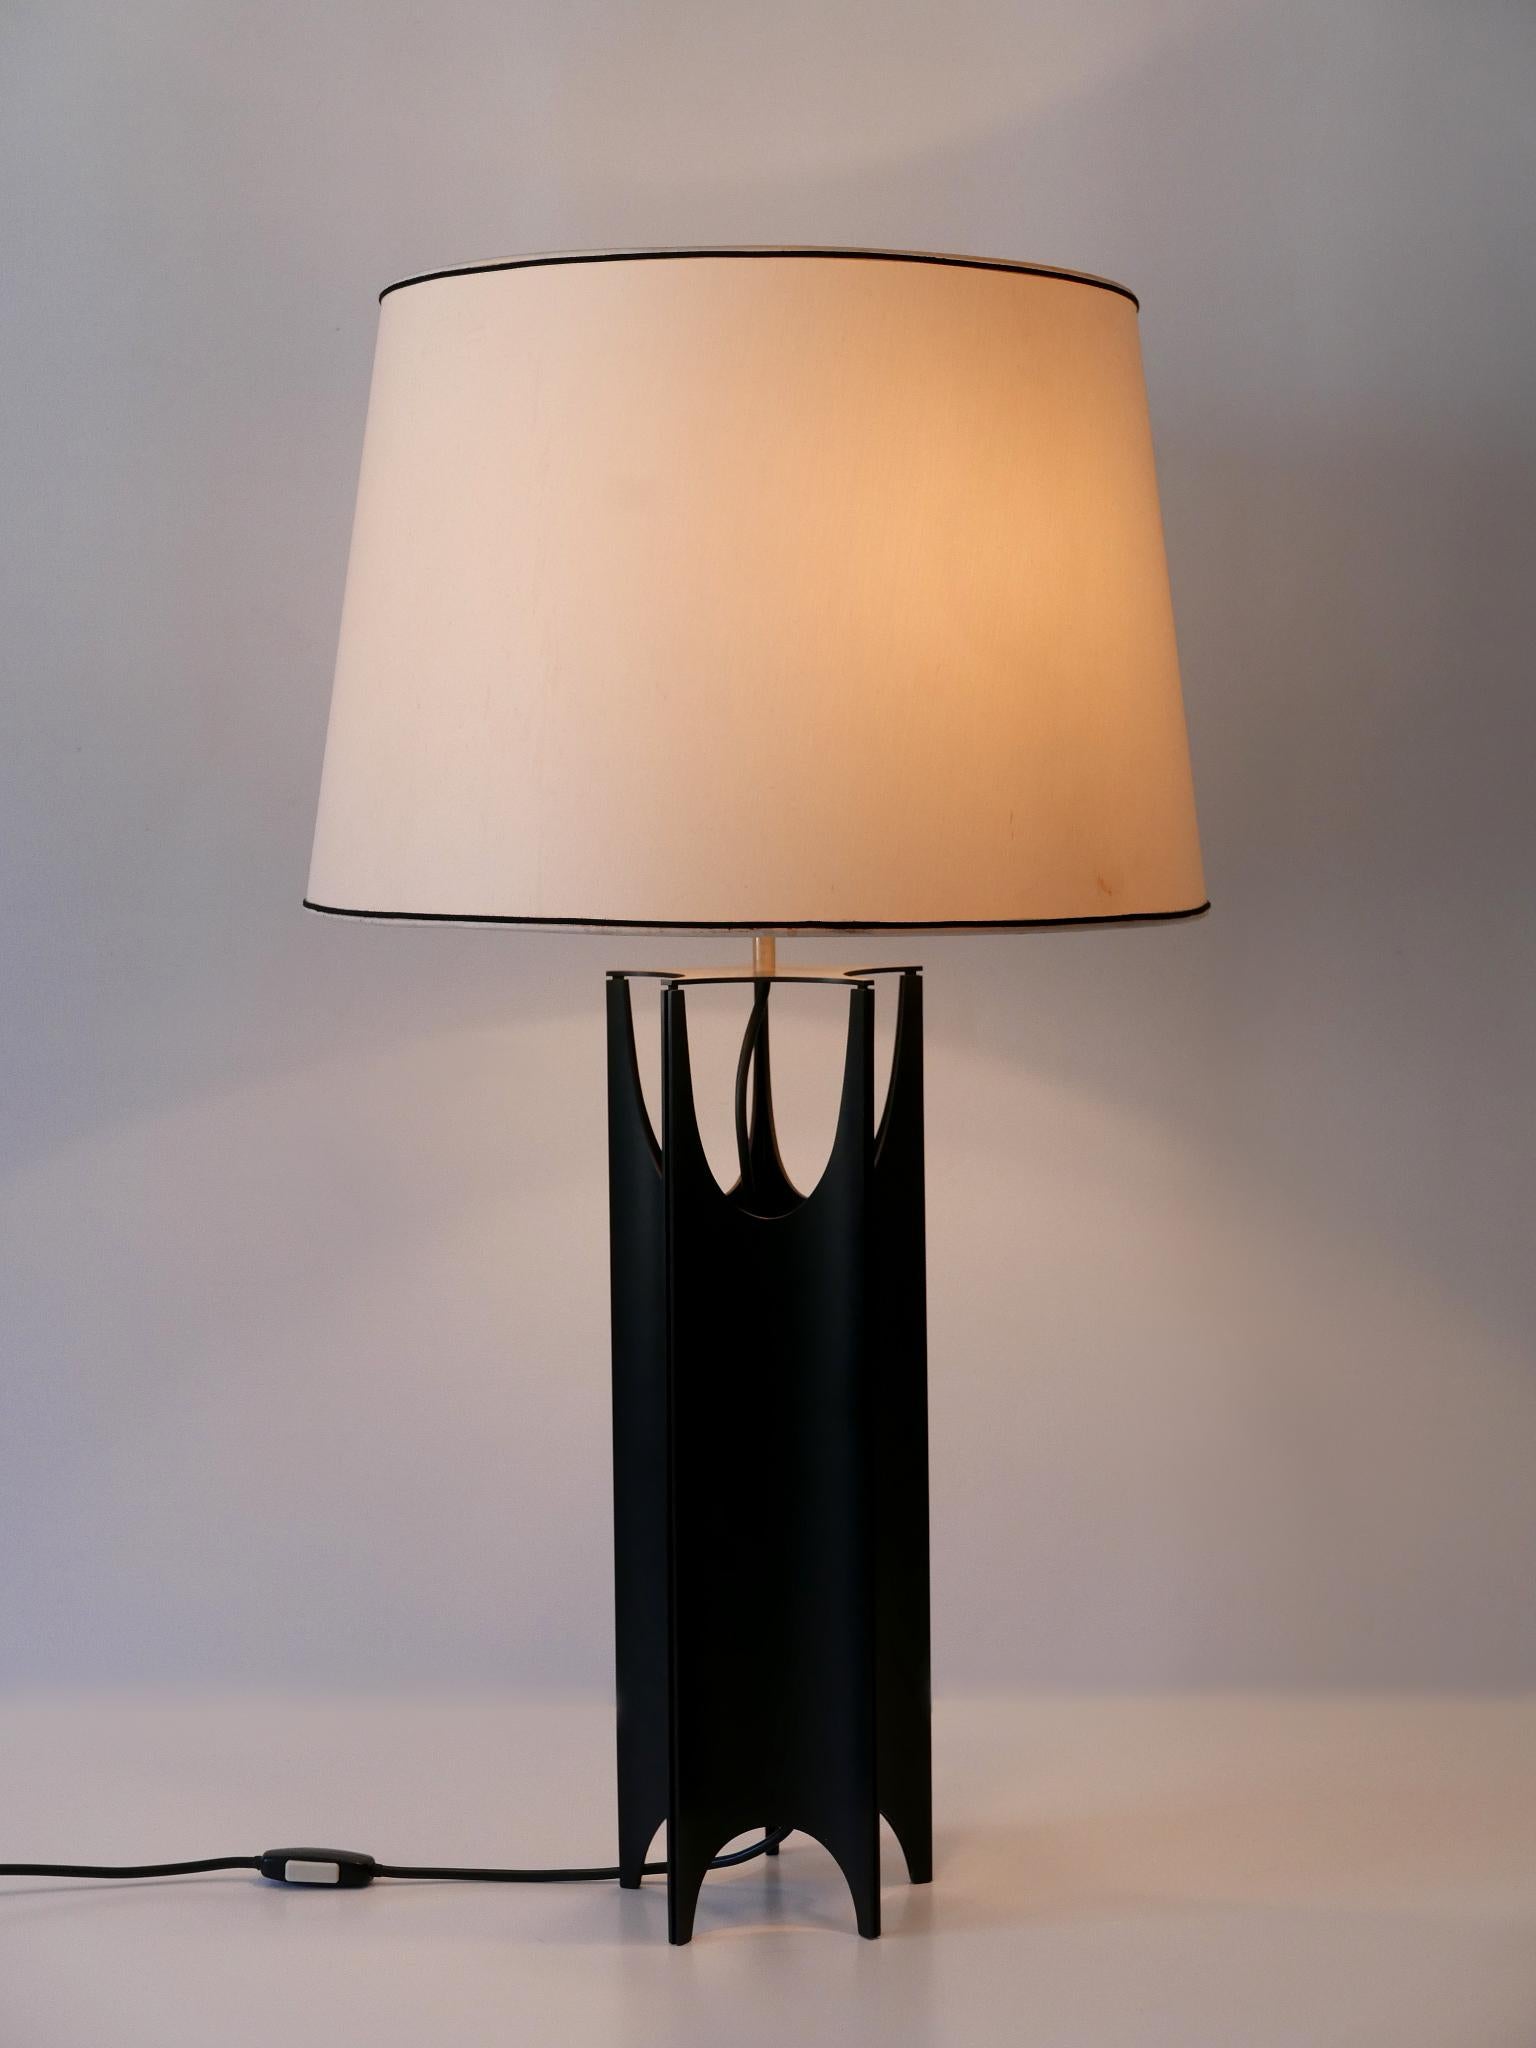 Extrêmement rare, élégante et grande lampe de table brutaliste de style Mid-Century Modern. Conçu et fabriqué en Italie, dans les années 1960.

Réalisée en métal peint noir, la lampe de table est livrée avec 2 ampoules à vis Edison E27 / E26, est